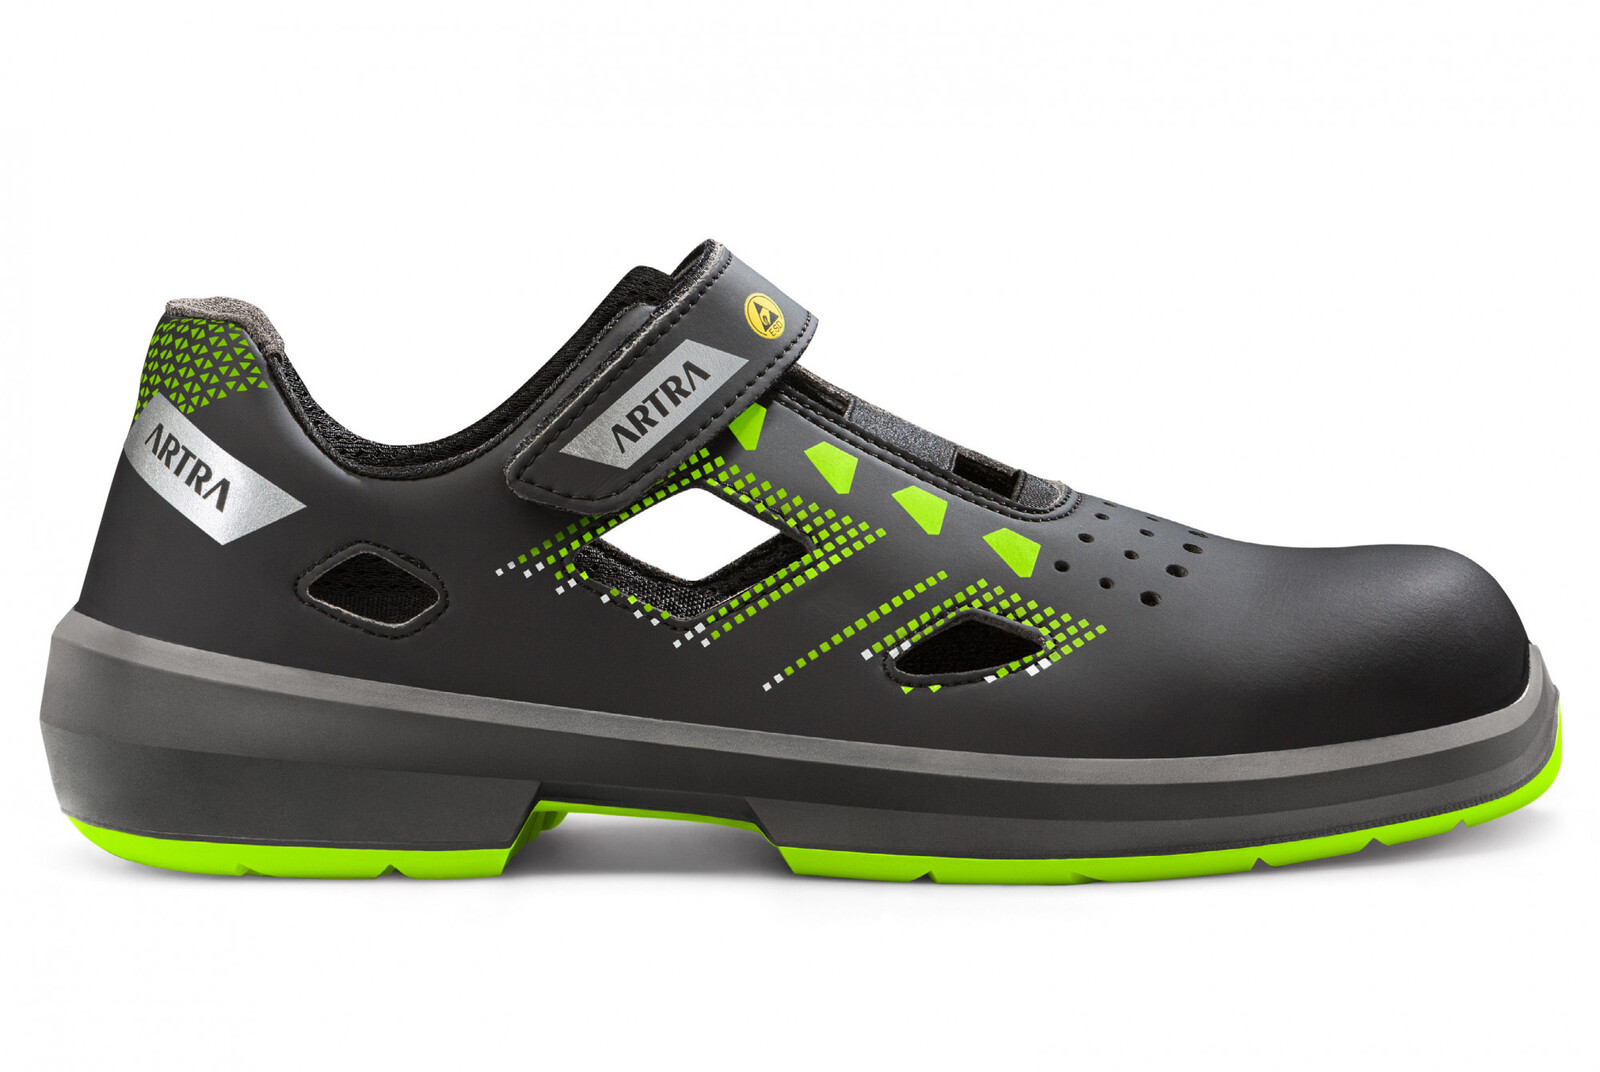 Bezpečnostné sandále Artra Arzo 805 678080 S1P SRC ESD MF - veľkosť: 45, farba: čierna/zelená